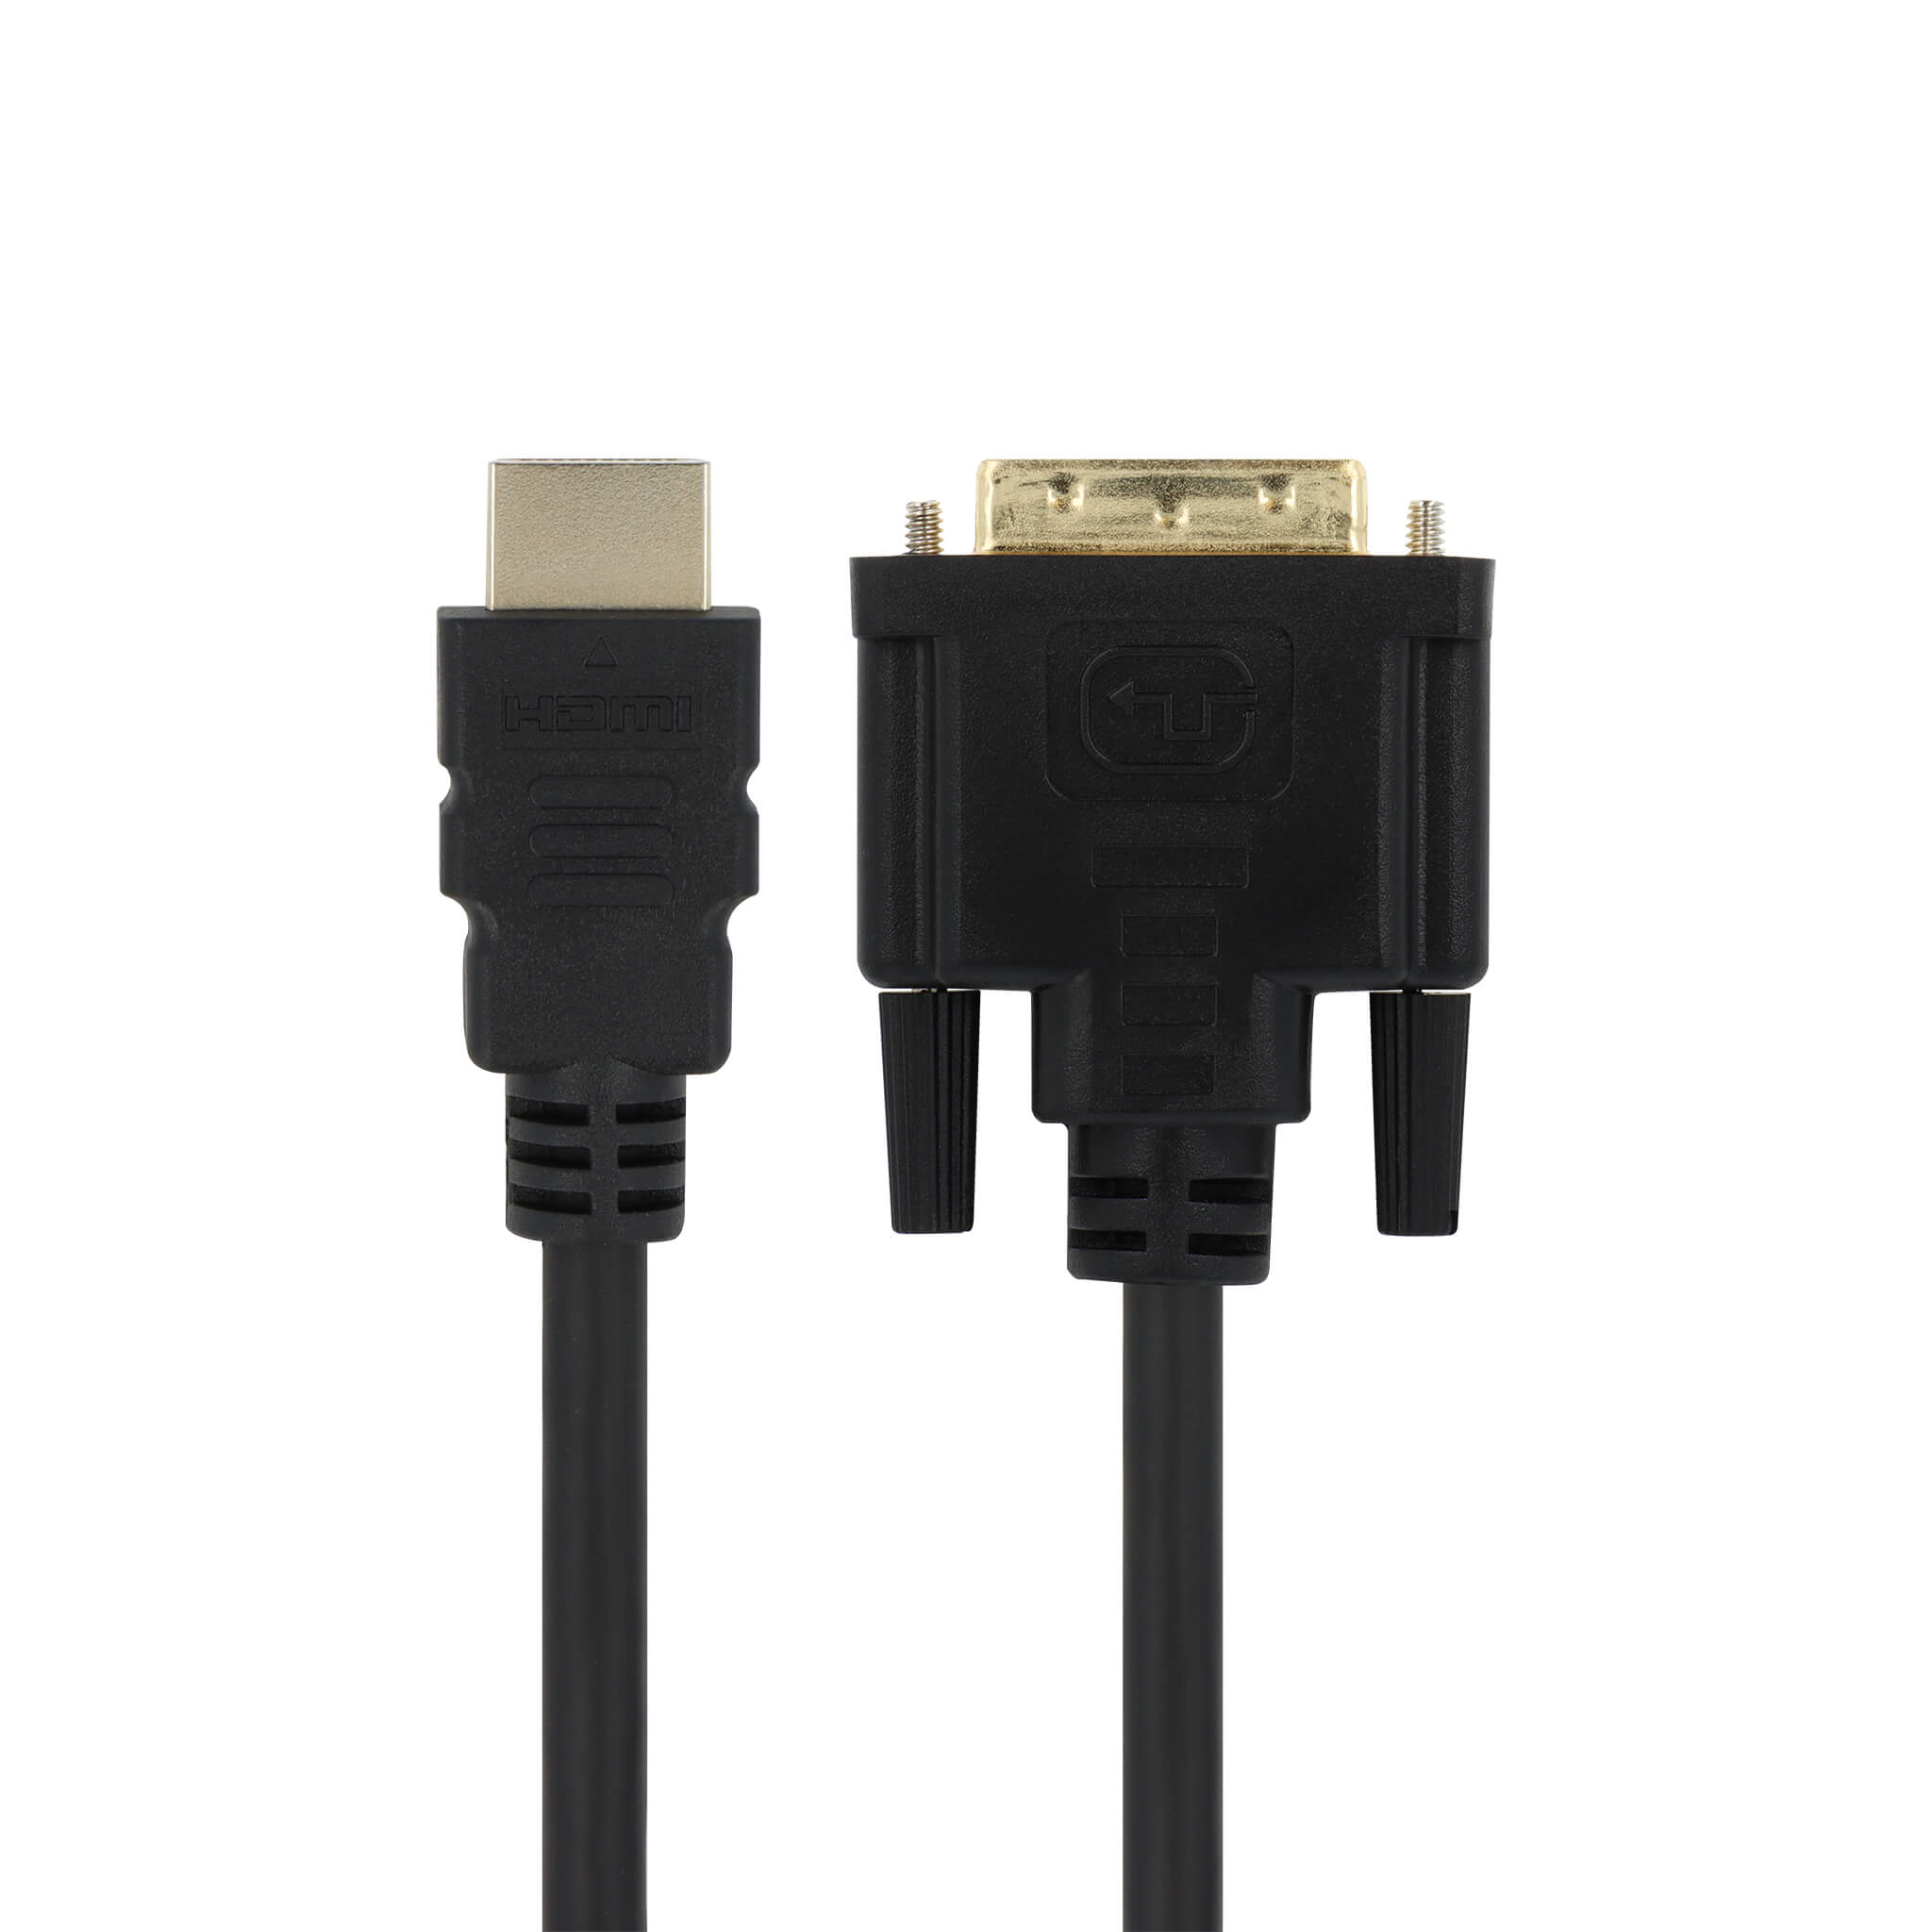 Følge efter maternal syre HDMI / DVI-D Bi-Directional Cable 6ft (M/M) – VisionTek.com